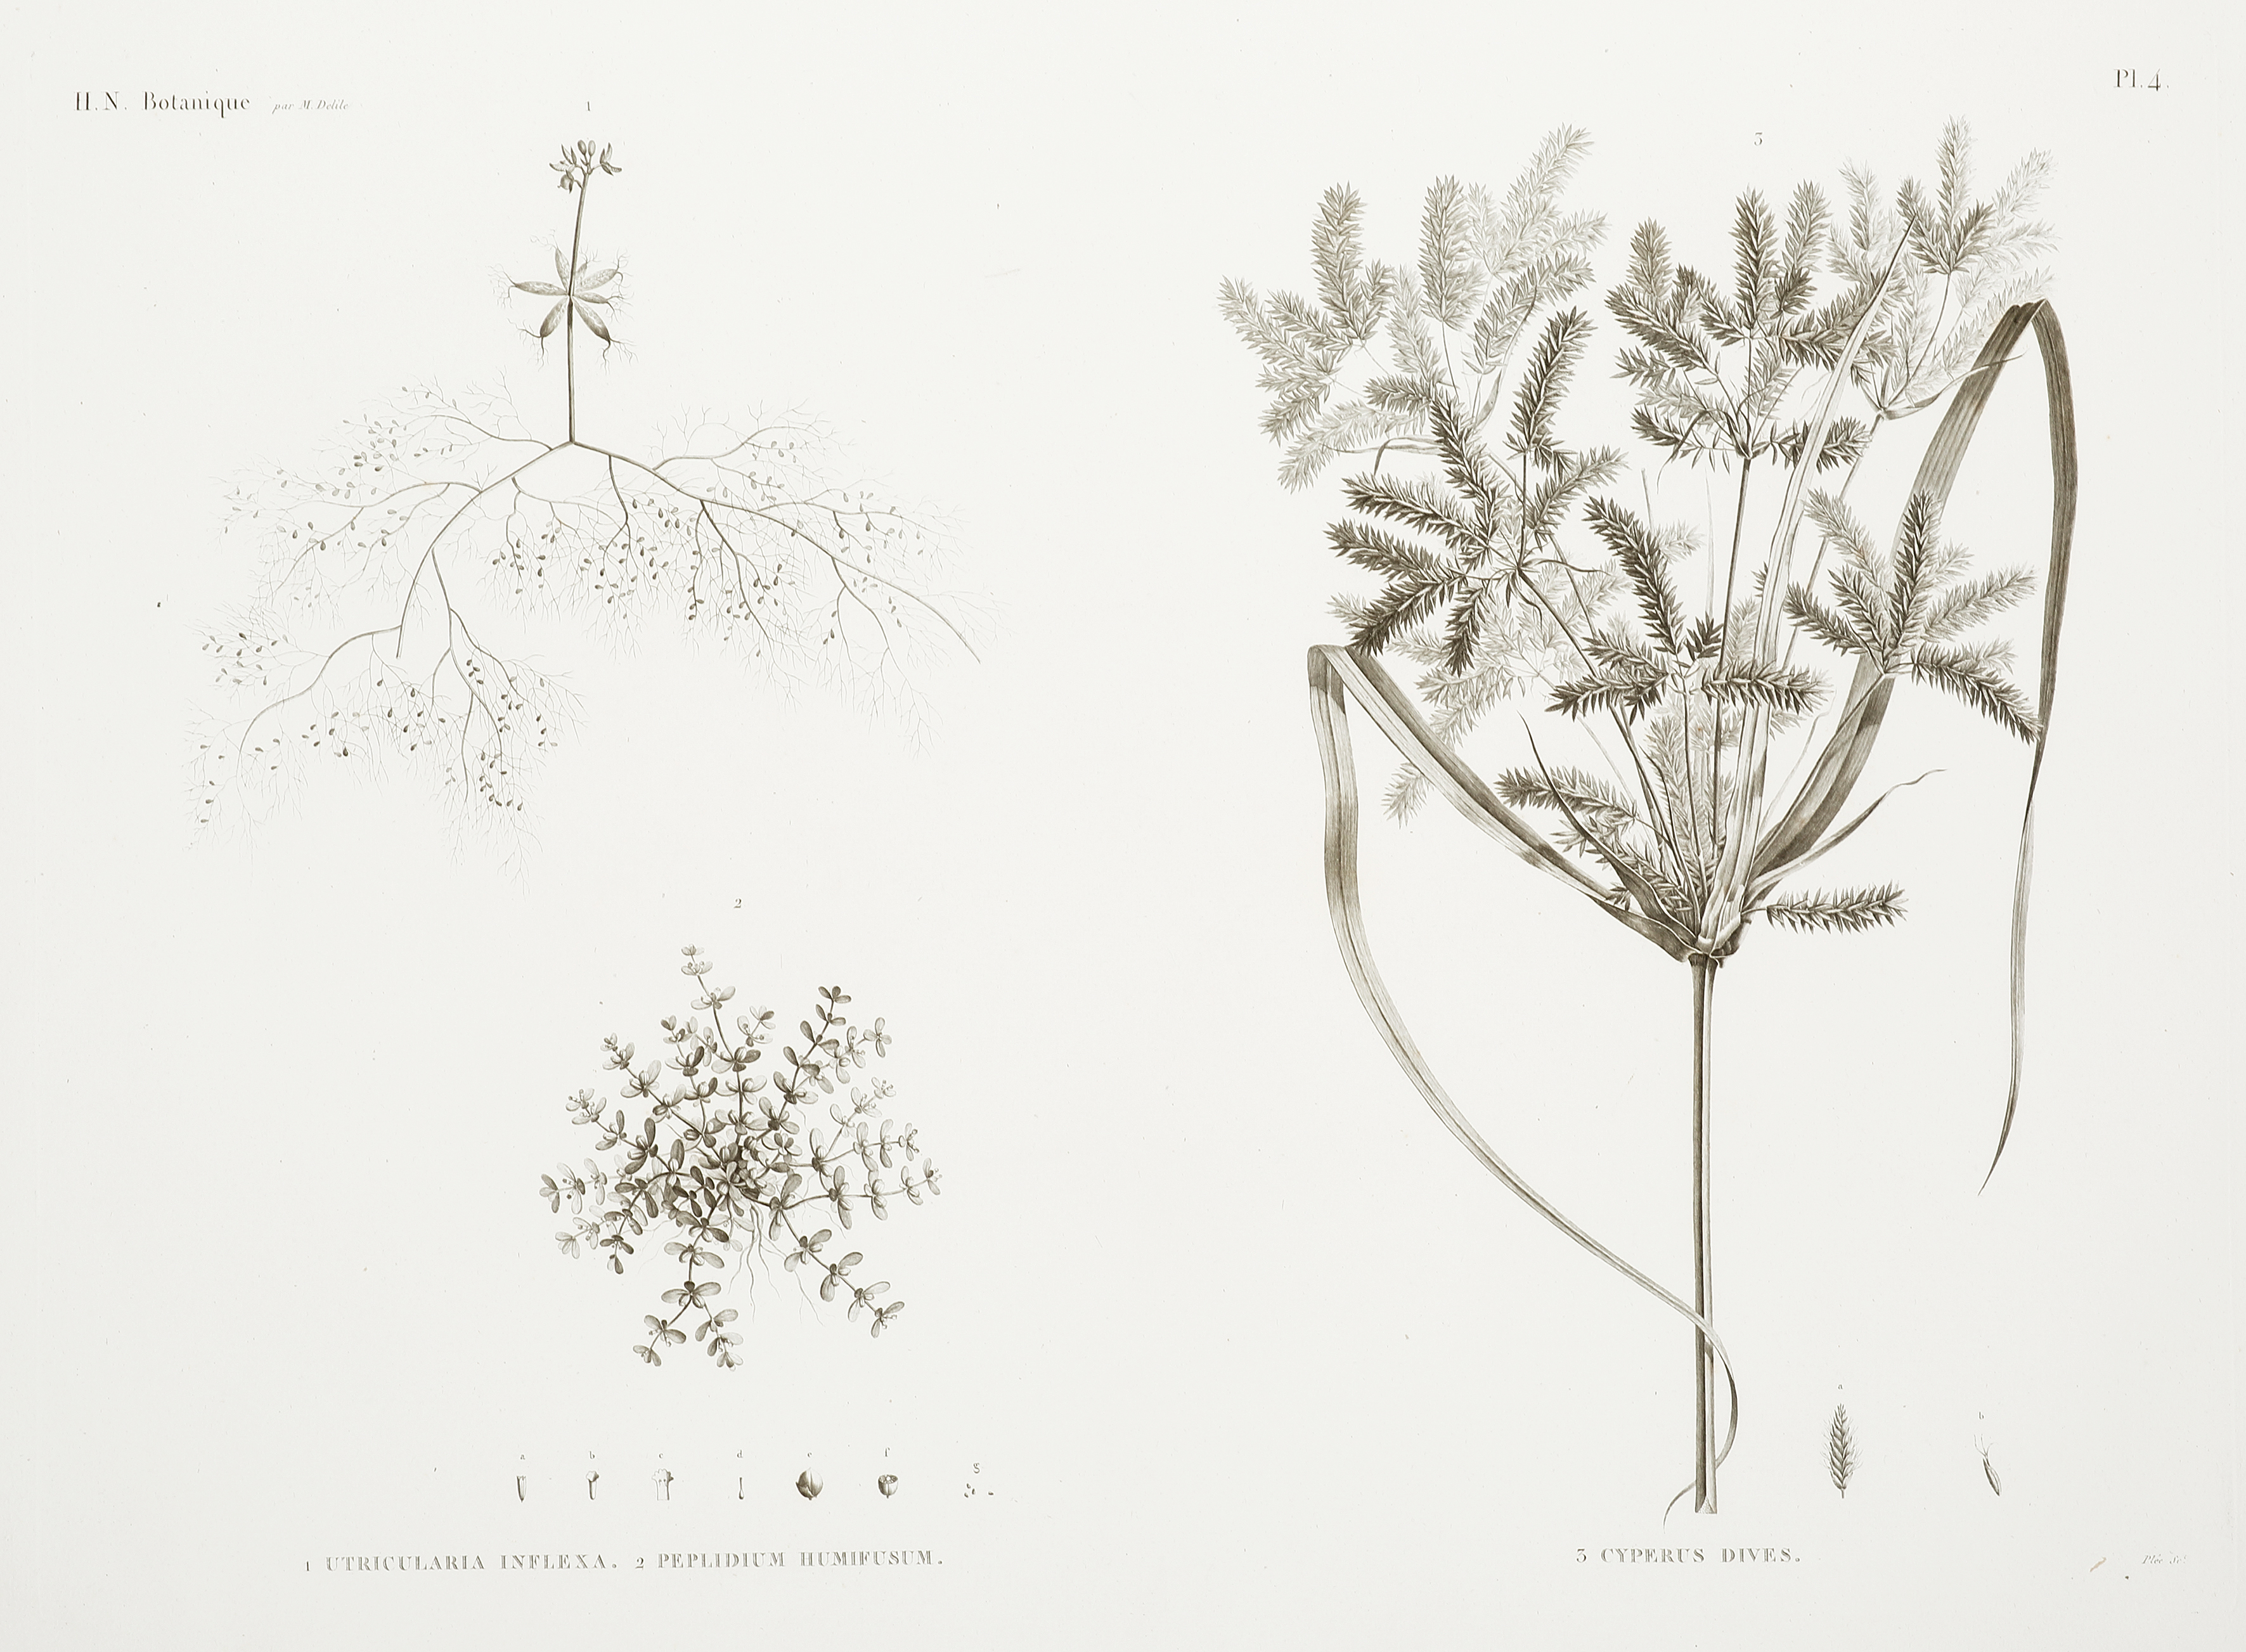 1.Utricularia Inflexa 2. Peplidium Humifusum 3. Cyperus Dives - Antique Print from 1819